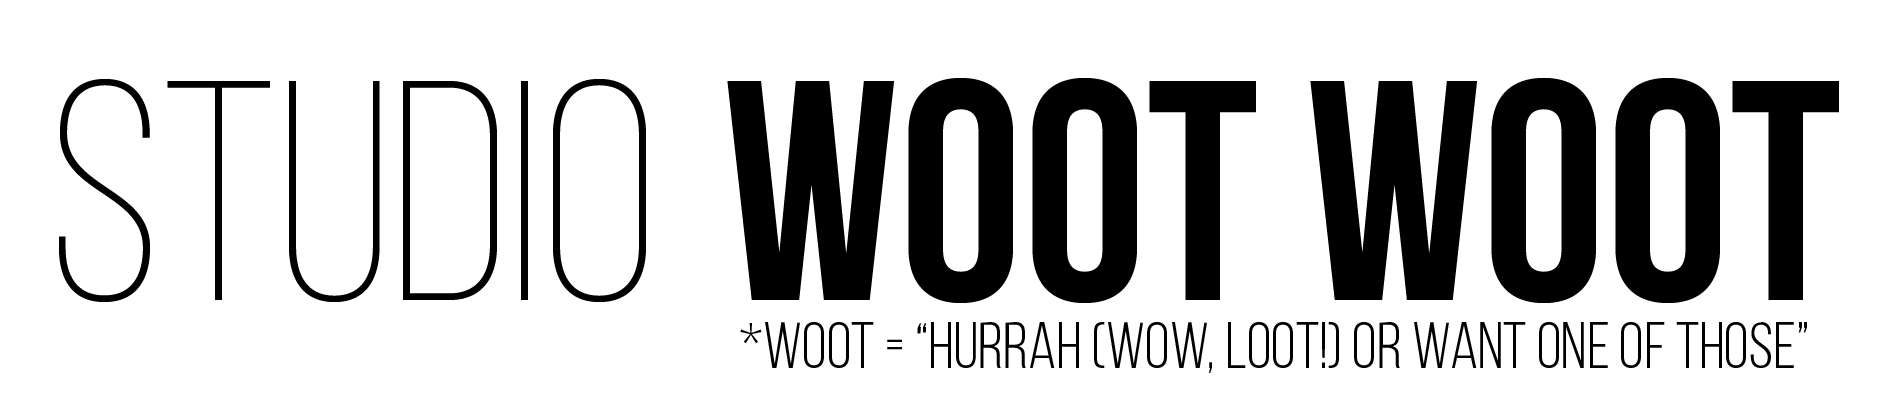 Woot Logo - studio Woot Woot